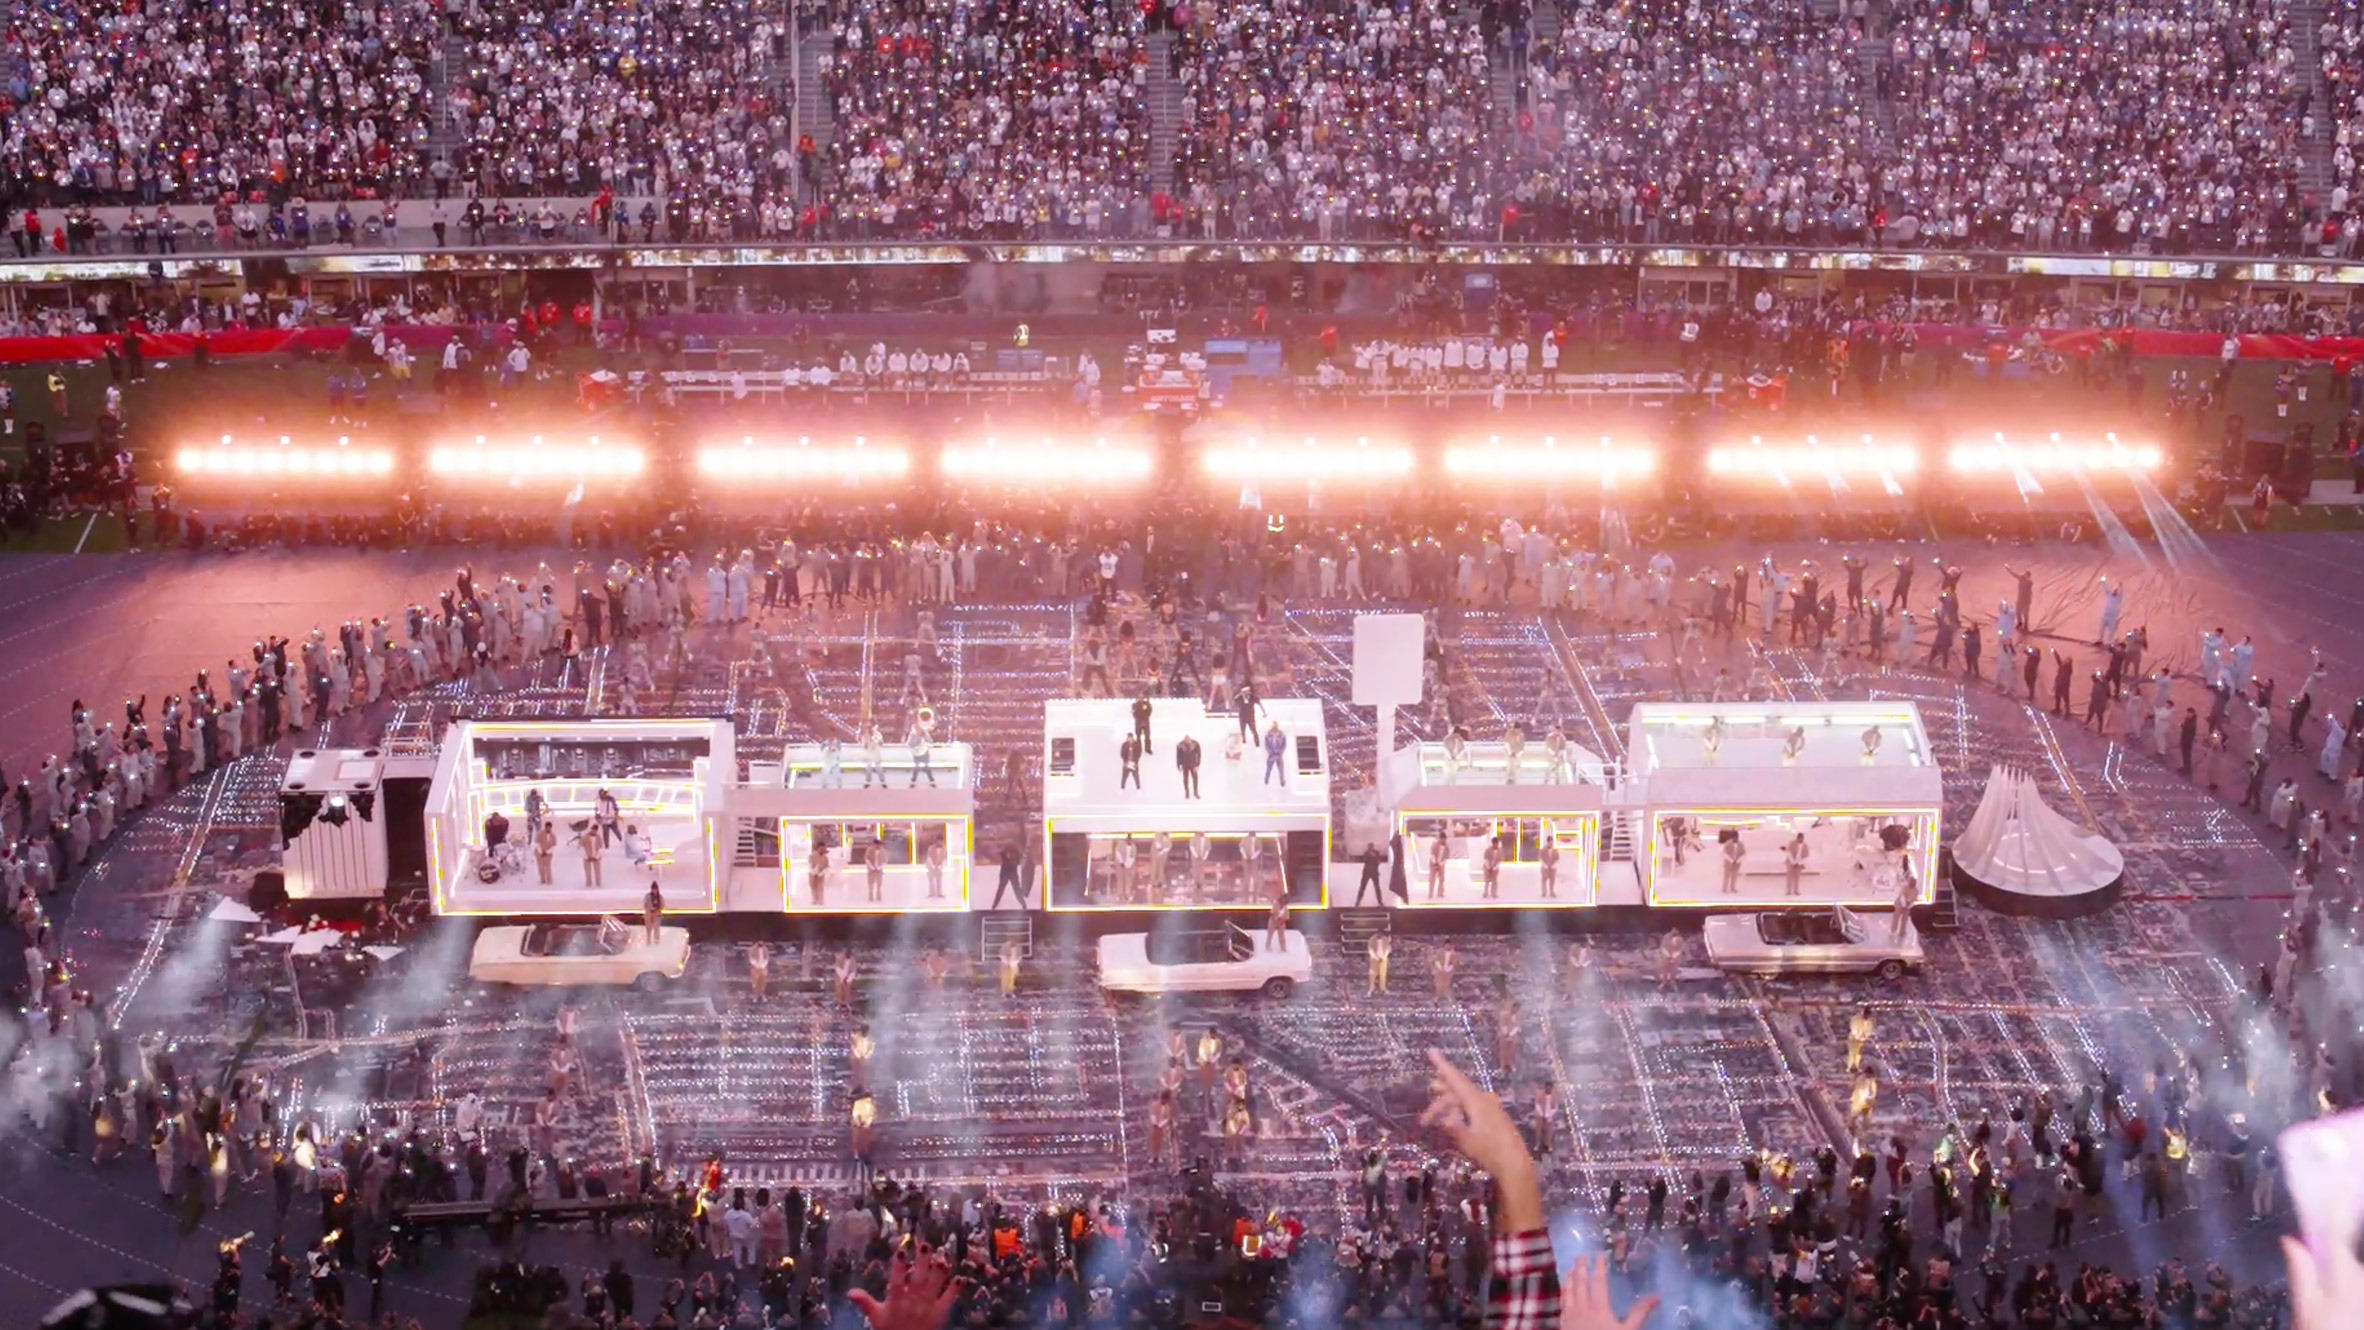 The Weeknd Posts Super Bowl Halftime Show Teaser